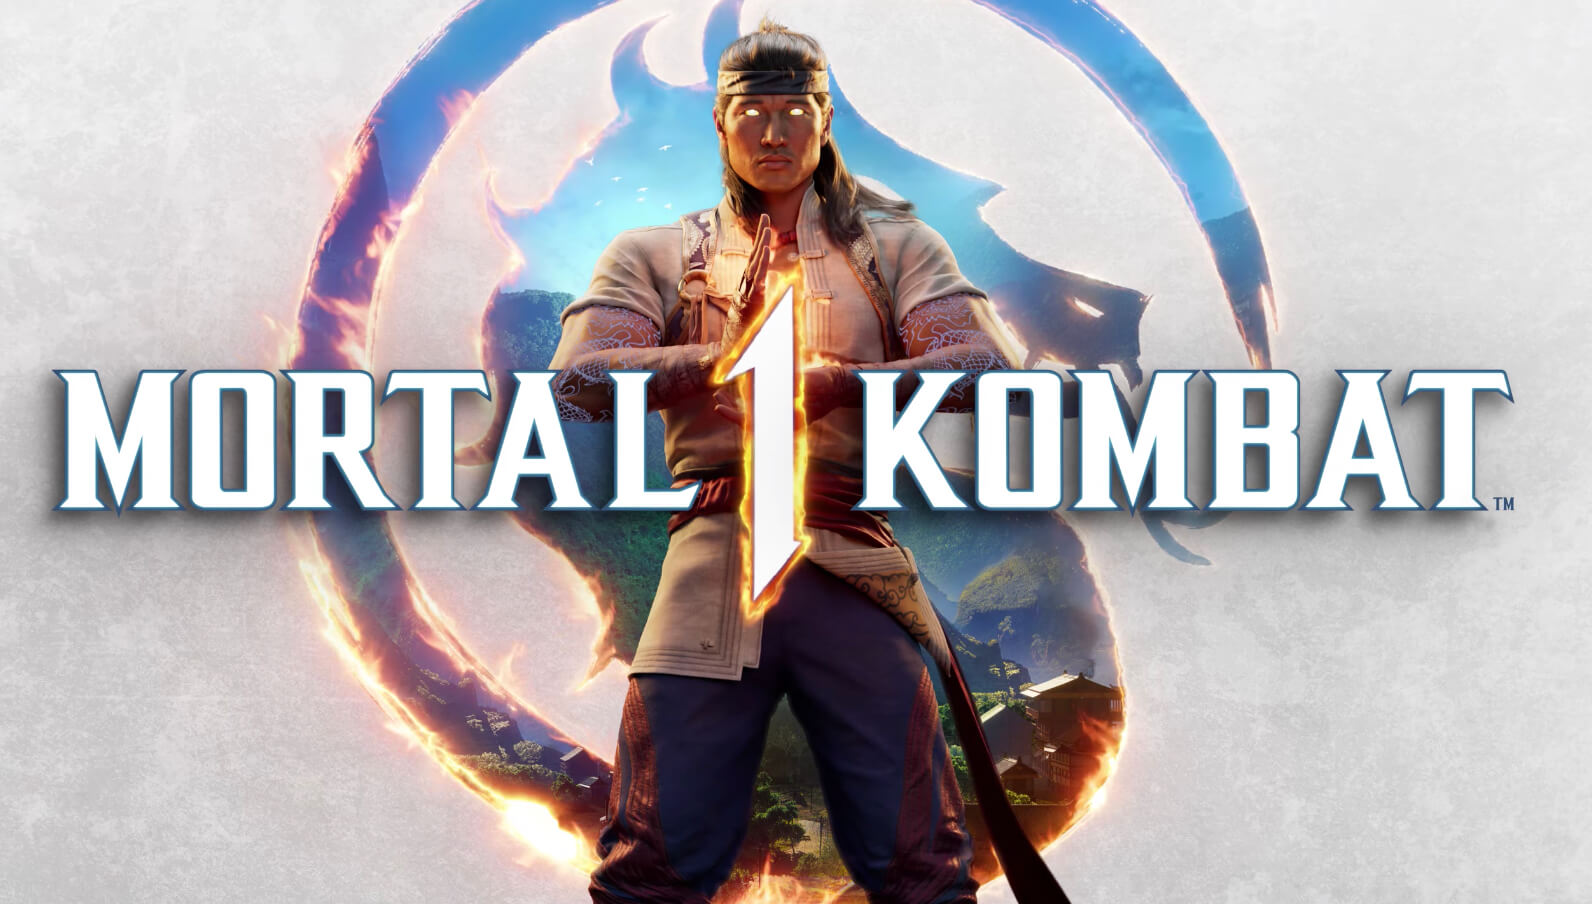 Показали первый геймплей Mortal Kombat 1 для Xbox Series X | S: с сайта NEWXBOXONE.RU